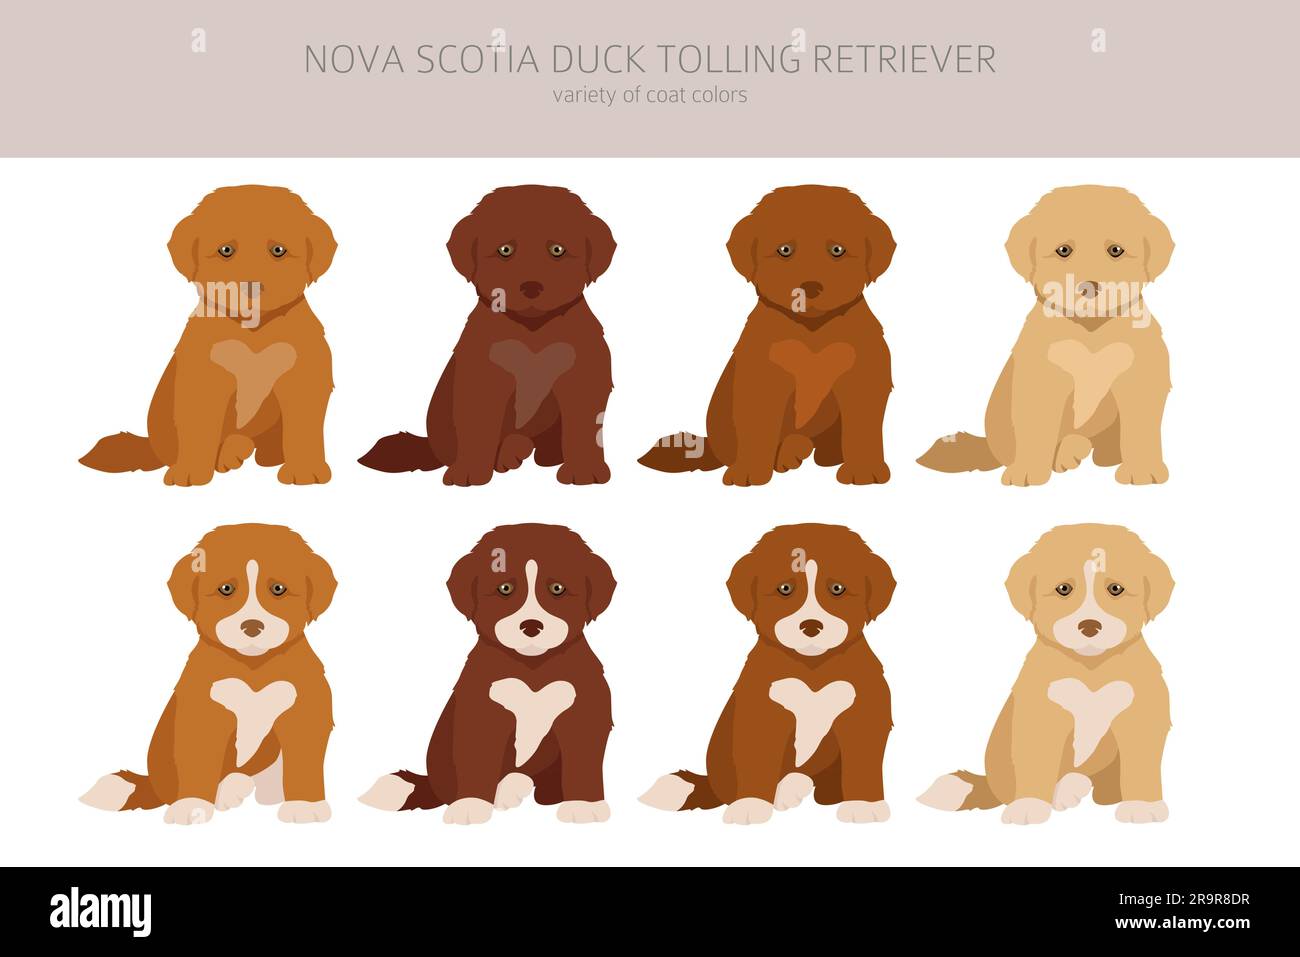 Nova Scotia duck tolling retriever puppies clipart. Different poses, coat colors set.  Vector illustration Stock Vector